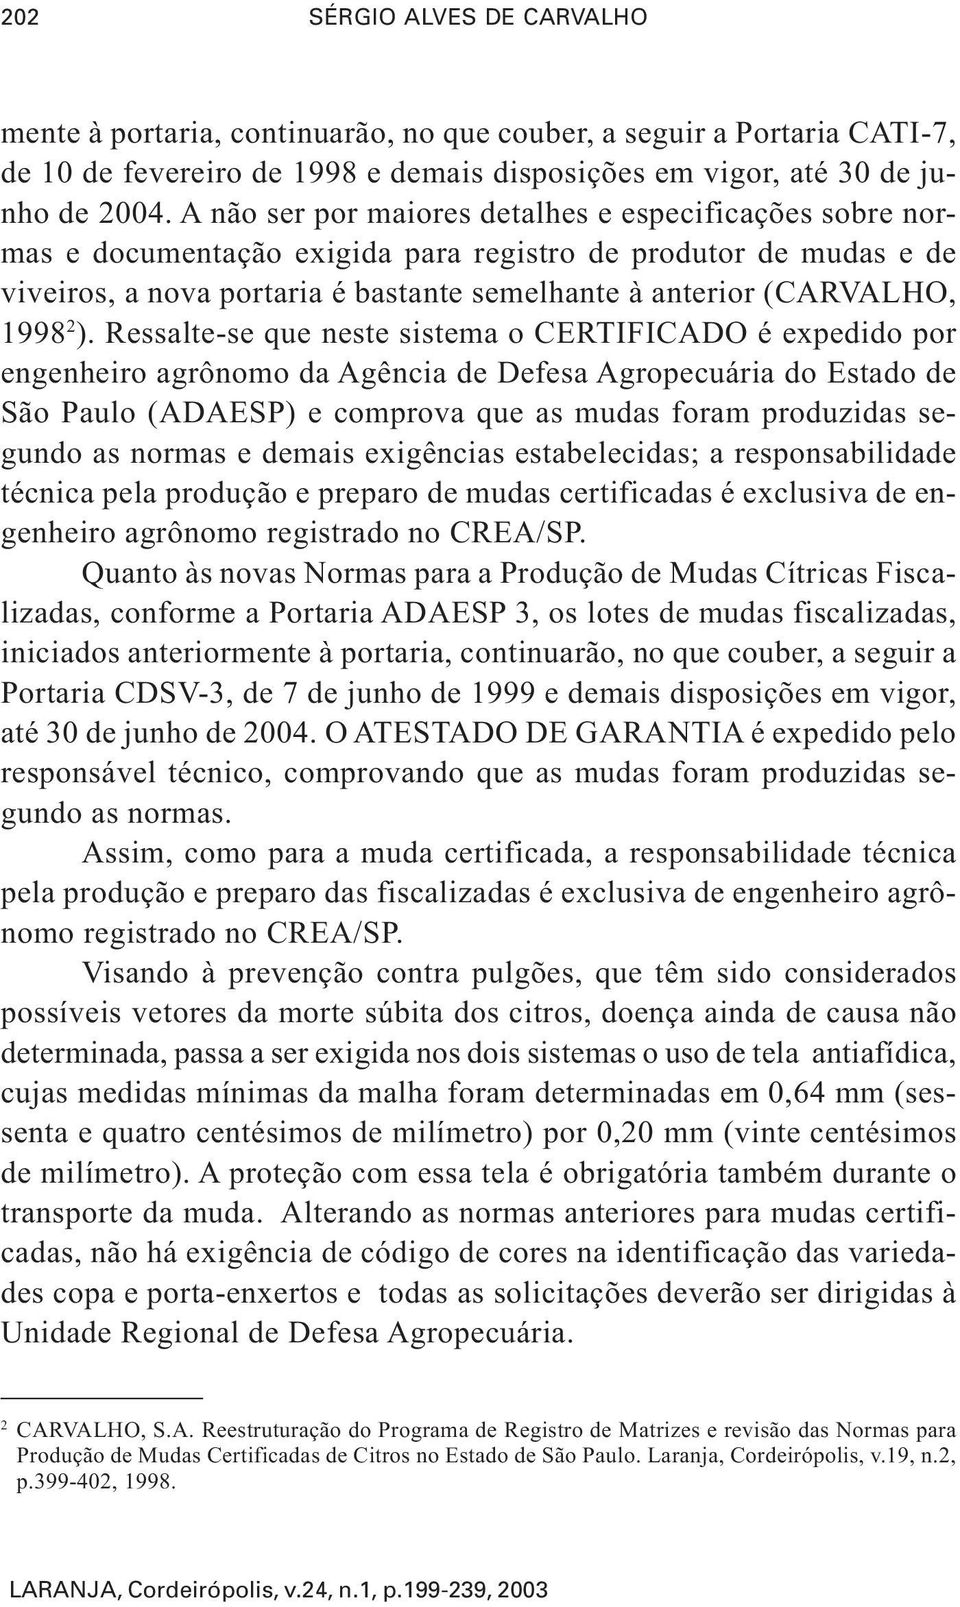 2 ). Ressalte-se que neste sistema o CERTIFICADO é expedido por engenheiro agrônomo da Agência de Defesa Agropecuária do Estado de São Paulo (ADAESP) e comprova que as mudas foram produzidas segundo